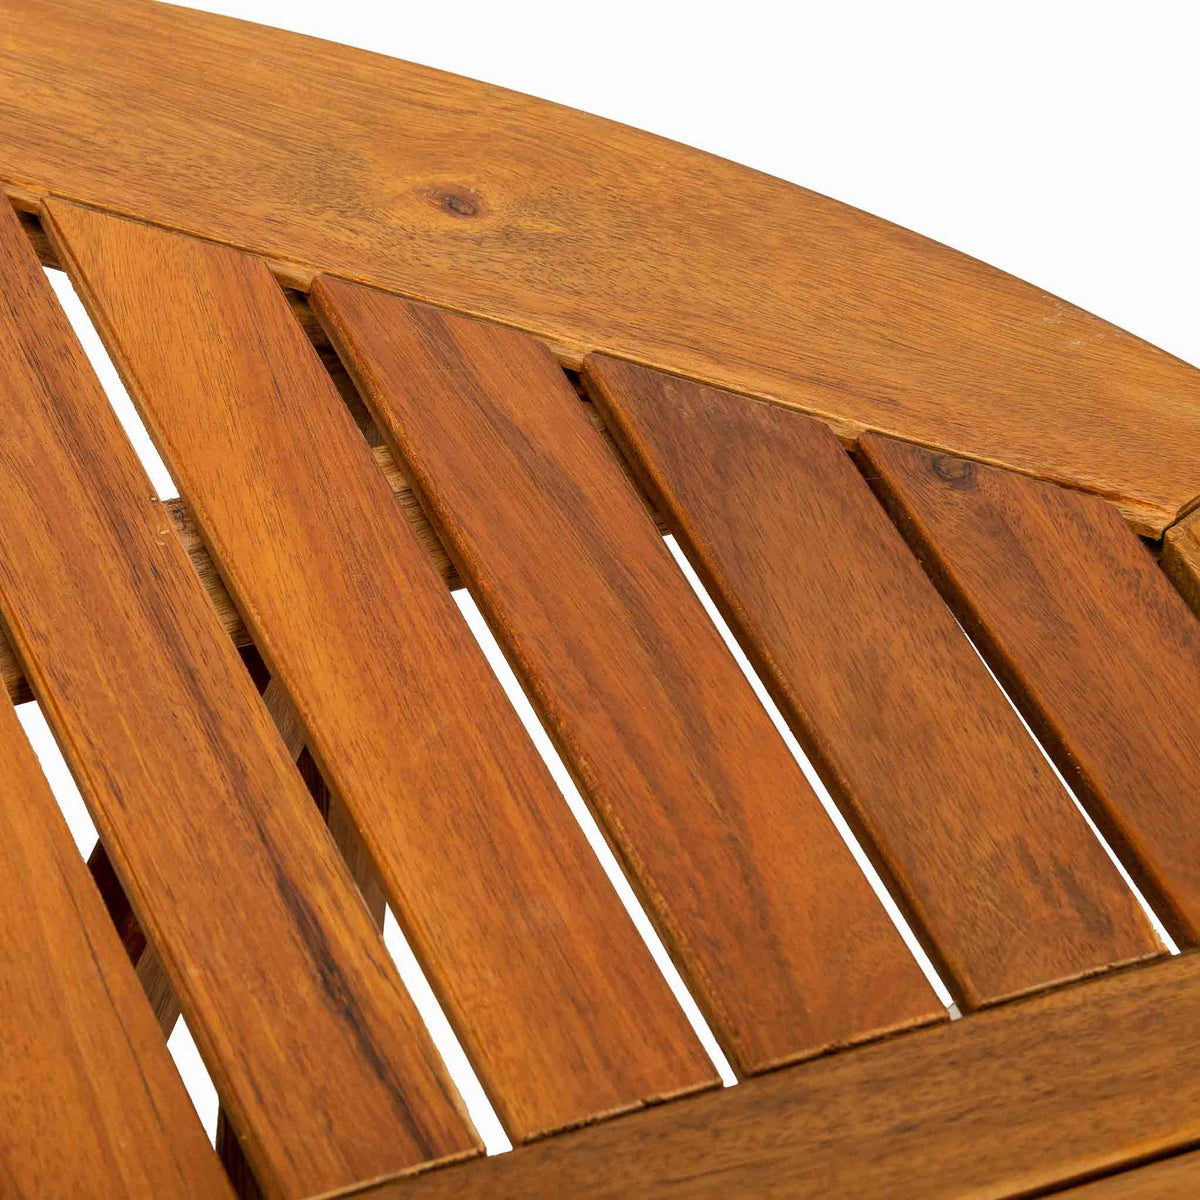 Acacia 120cm Round Gateleg Garden Table - Close up of table top slats